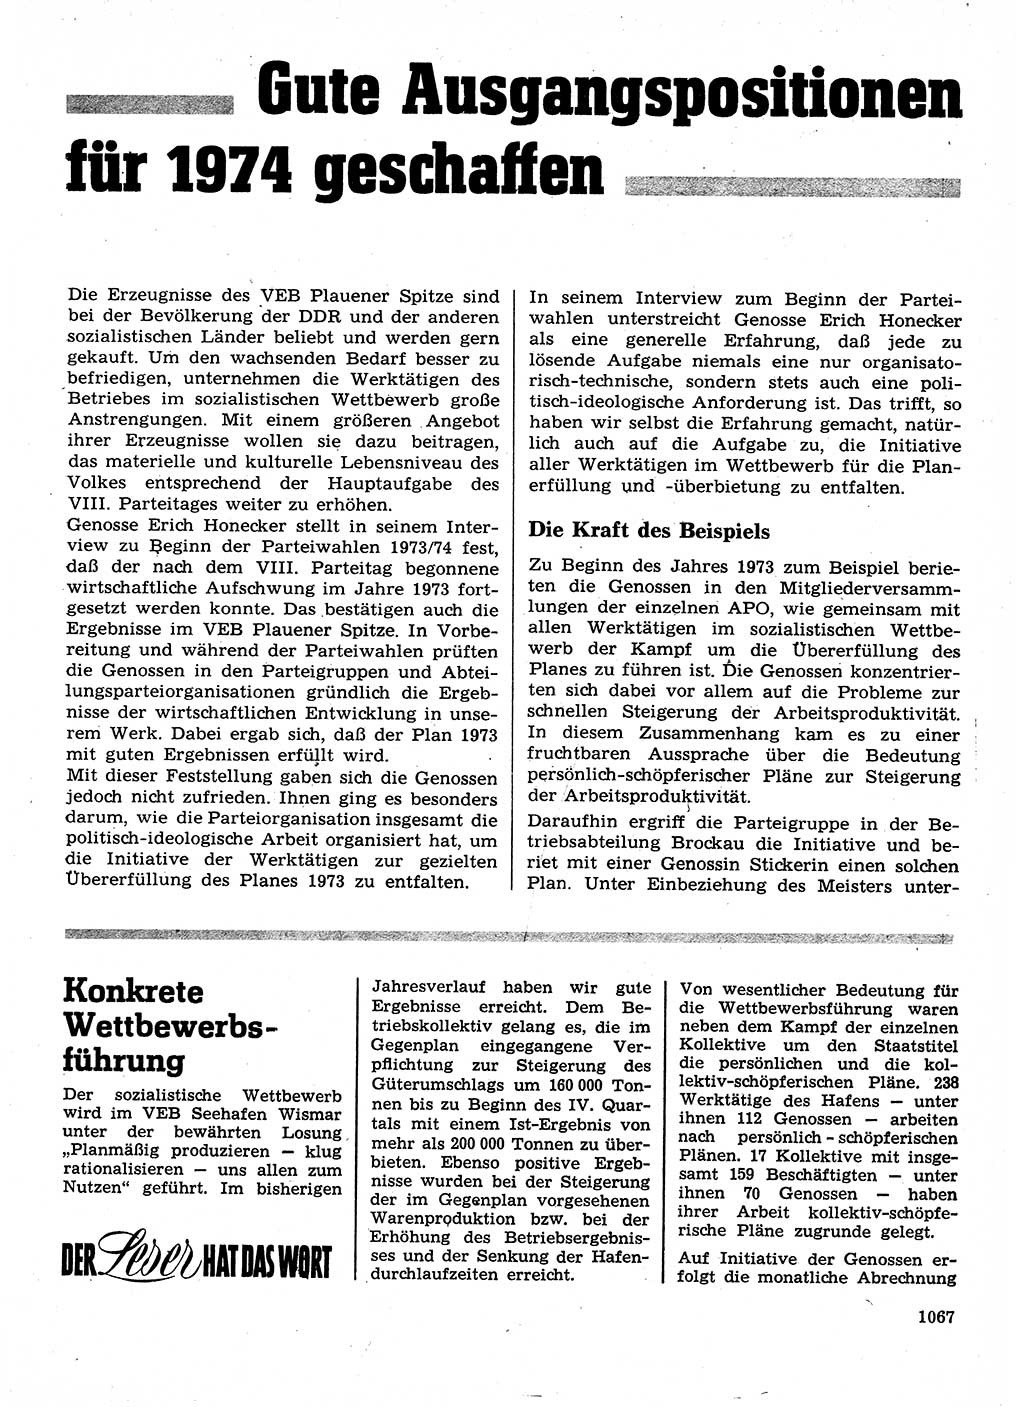 Neuer Weg (NW), Organ des Zentralkomitees (ZK) der SED (Sozialistische Einheitspartei Deutschlands) für Fragen des Parteilebens, 28. Jahrgang [Deutsche Demokratische Republik (DDR)] 1973, Seite 1067 (NW ZK SED DDR 1973, S. 1067)